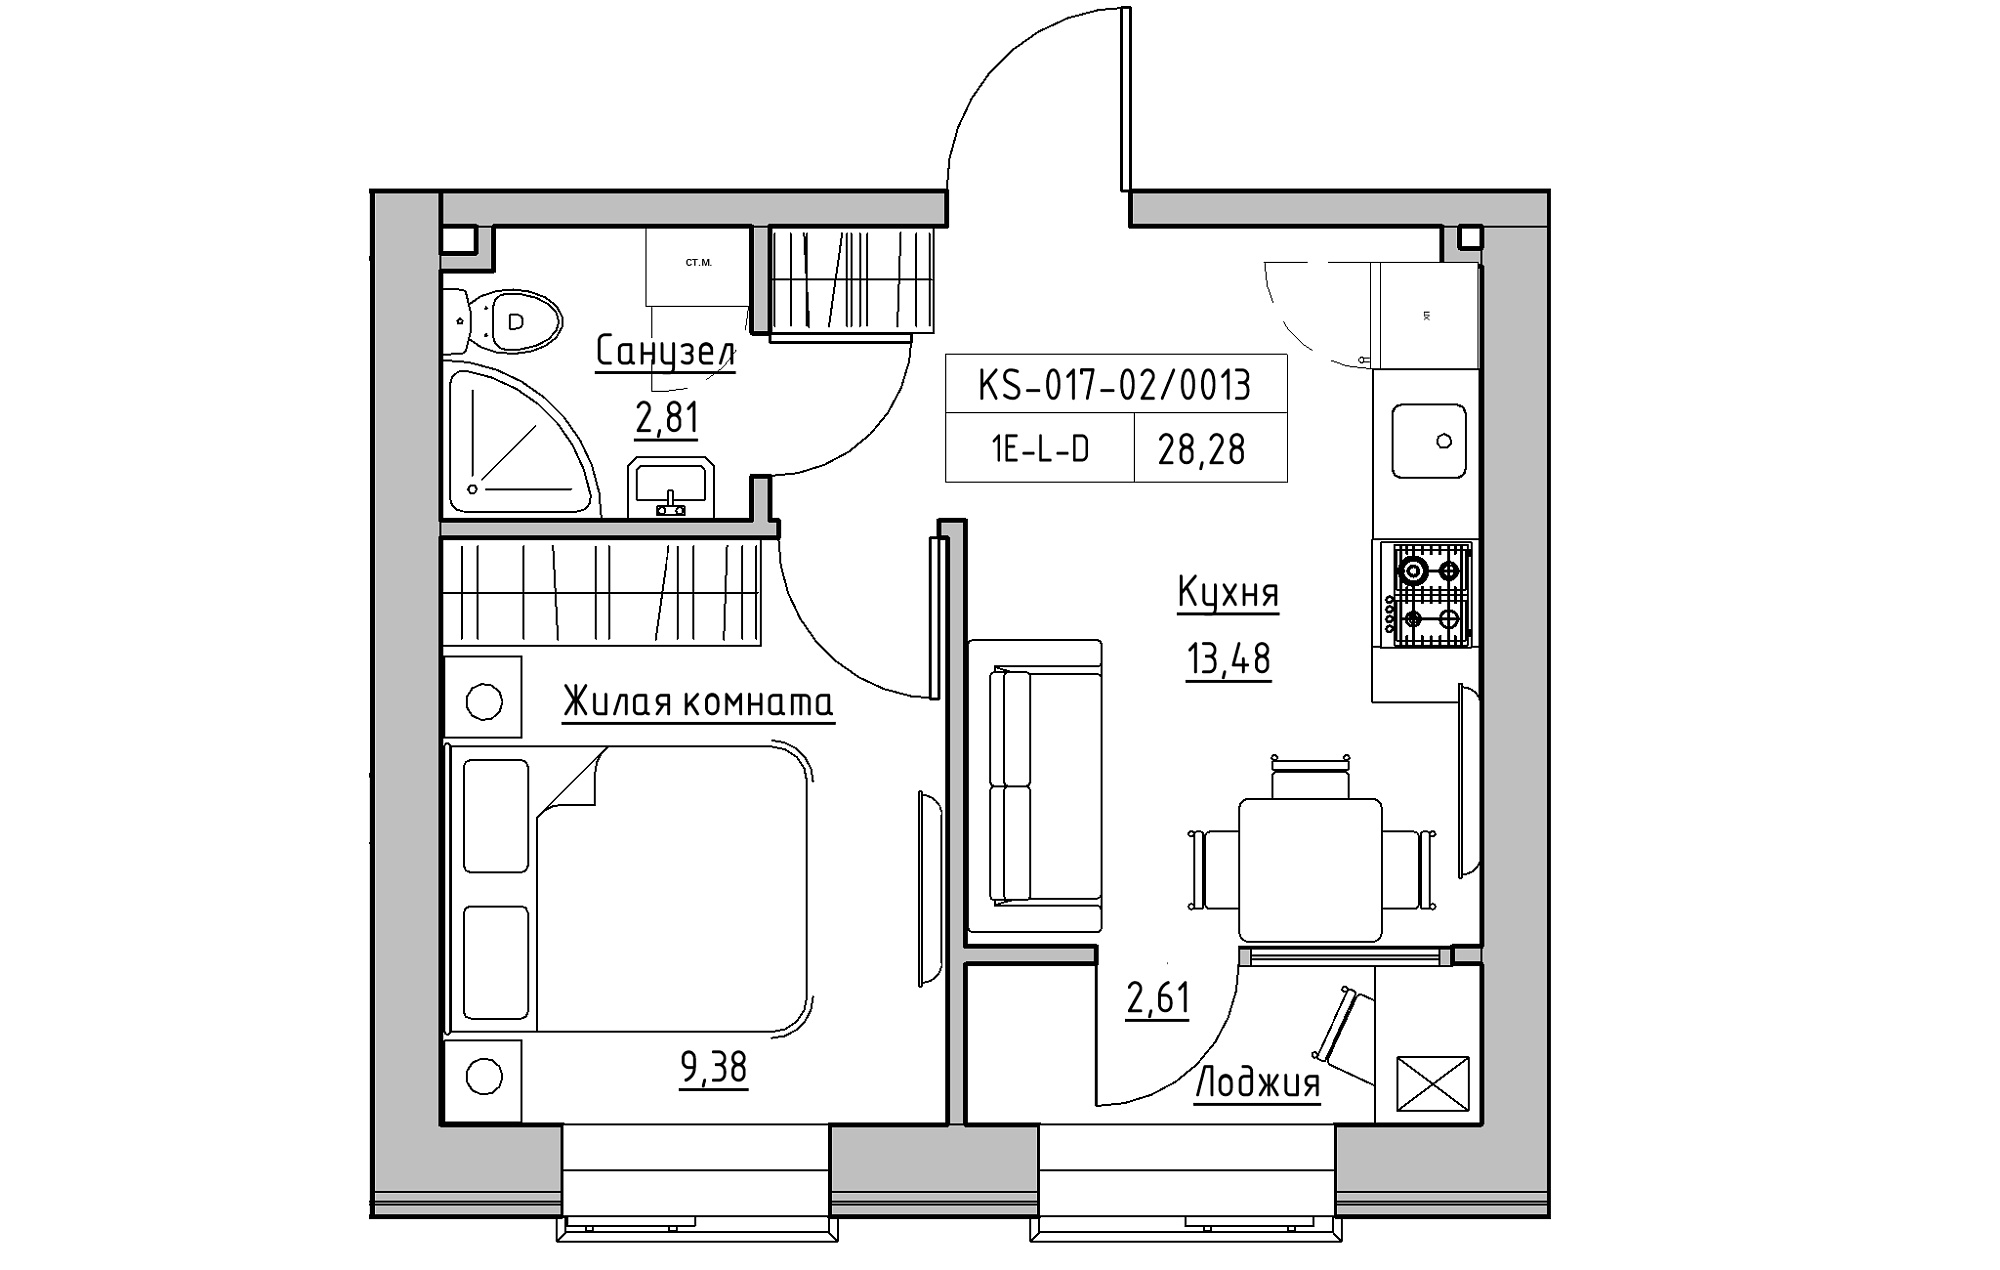 Планування 1-к квартира площею 28.28м2, KS-017-02/0013.